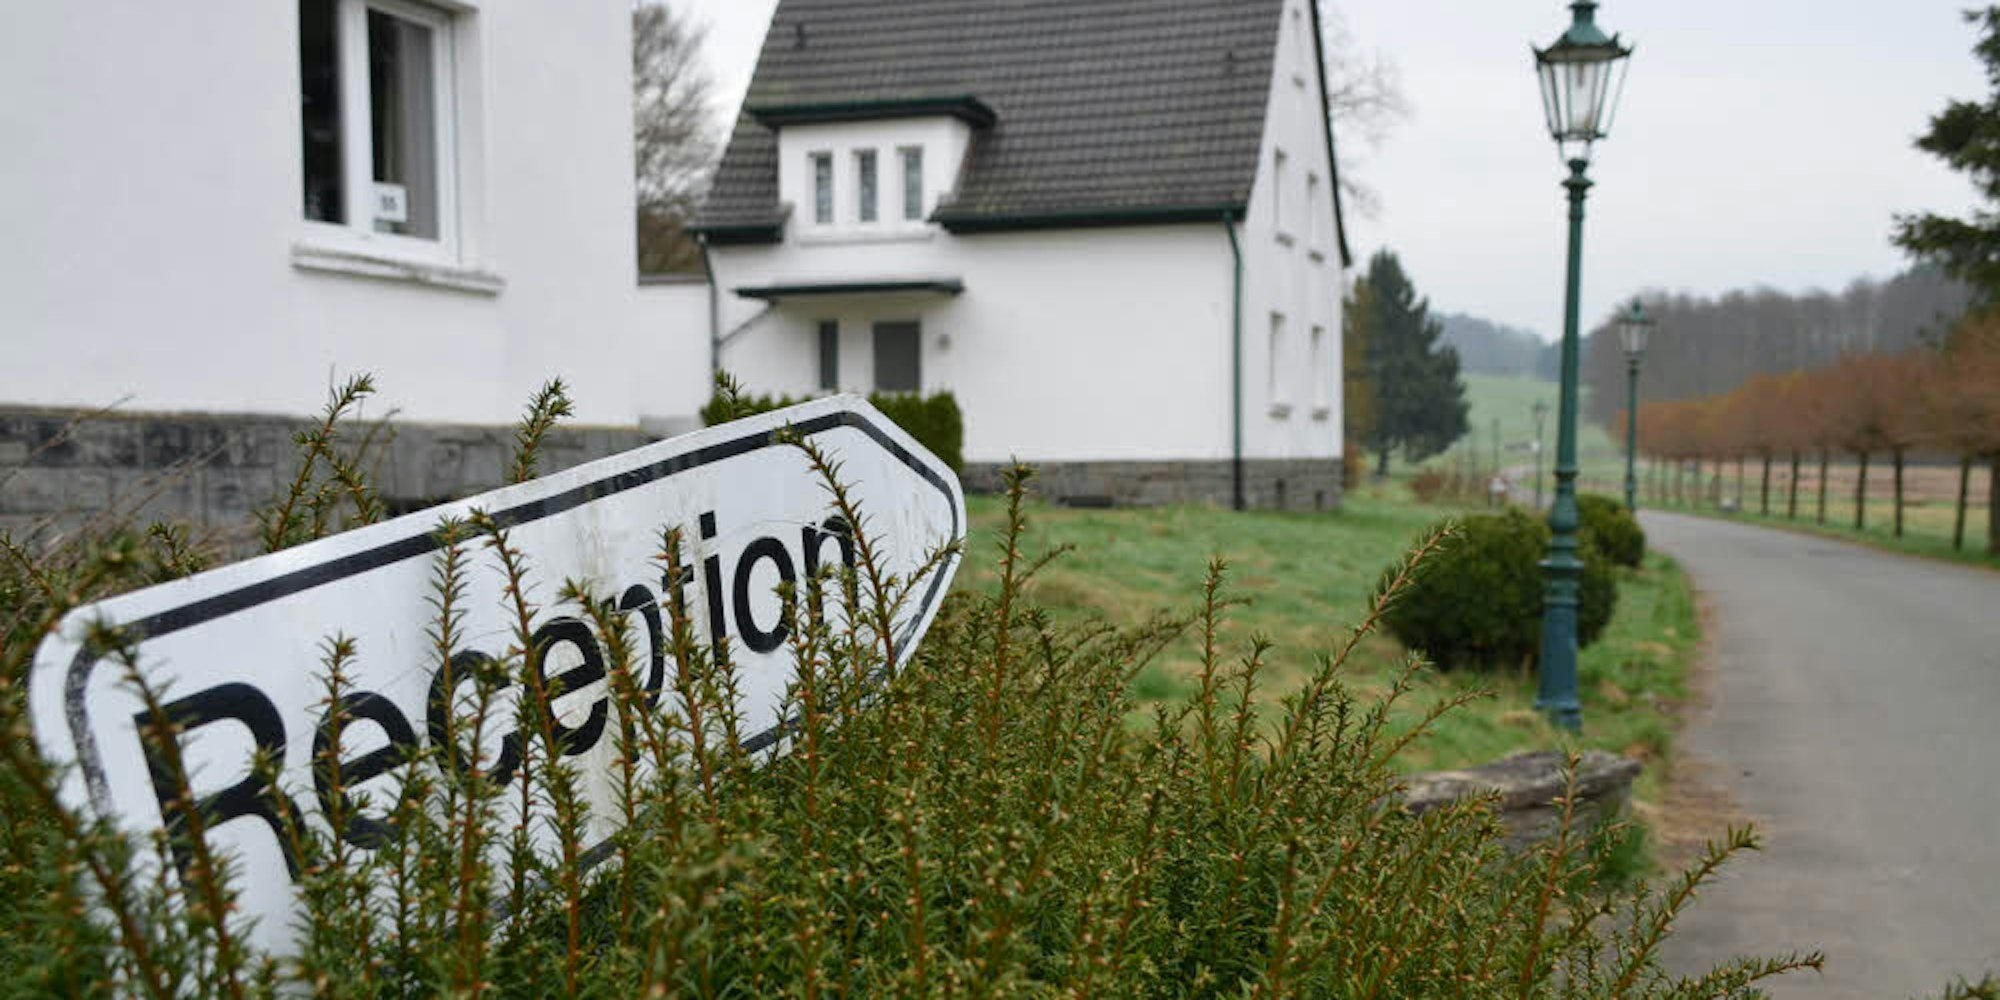 Noch weist ein Schild den Weg zum früheren Empfangsgebäude von Haus Bierenbach. Wie die Nümbrechter die neue „Gemeinschaft im Haus Bierenbach“ aufnehmen, wird sich zeigen.